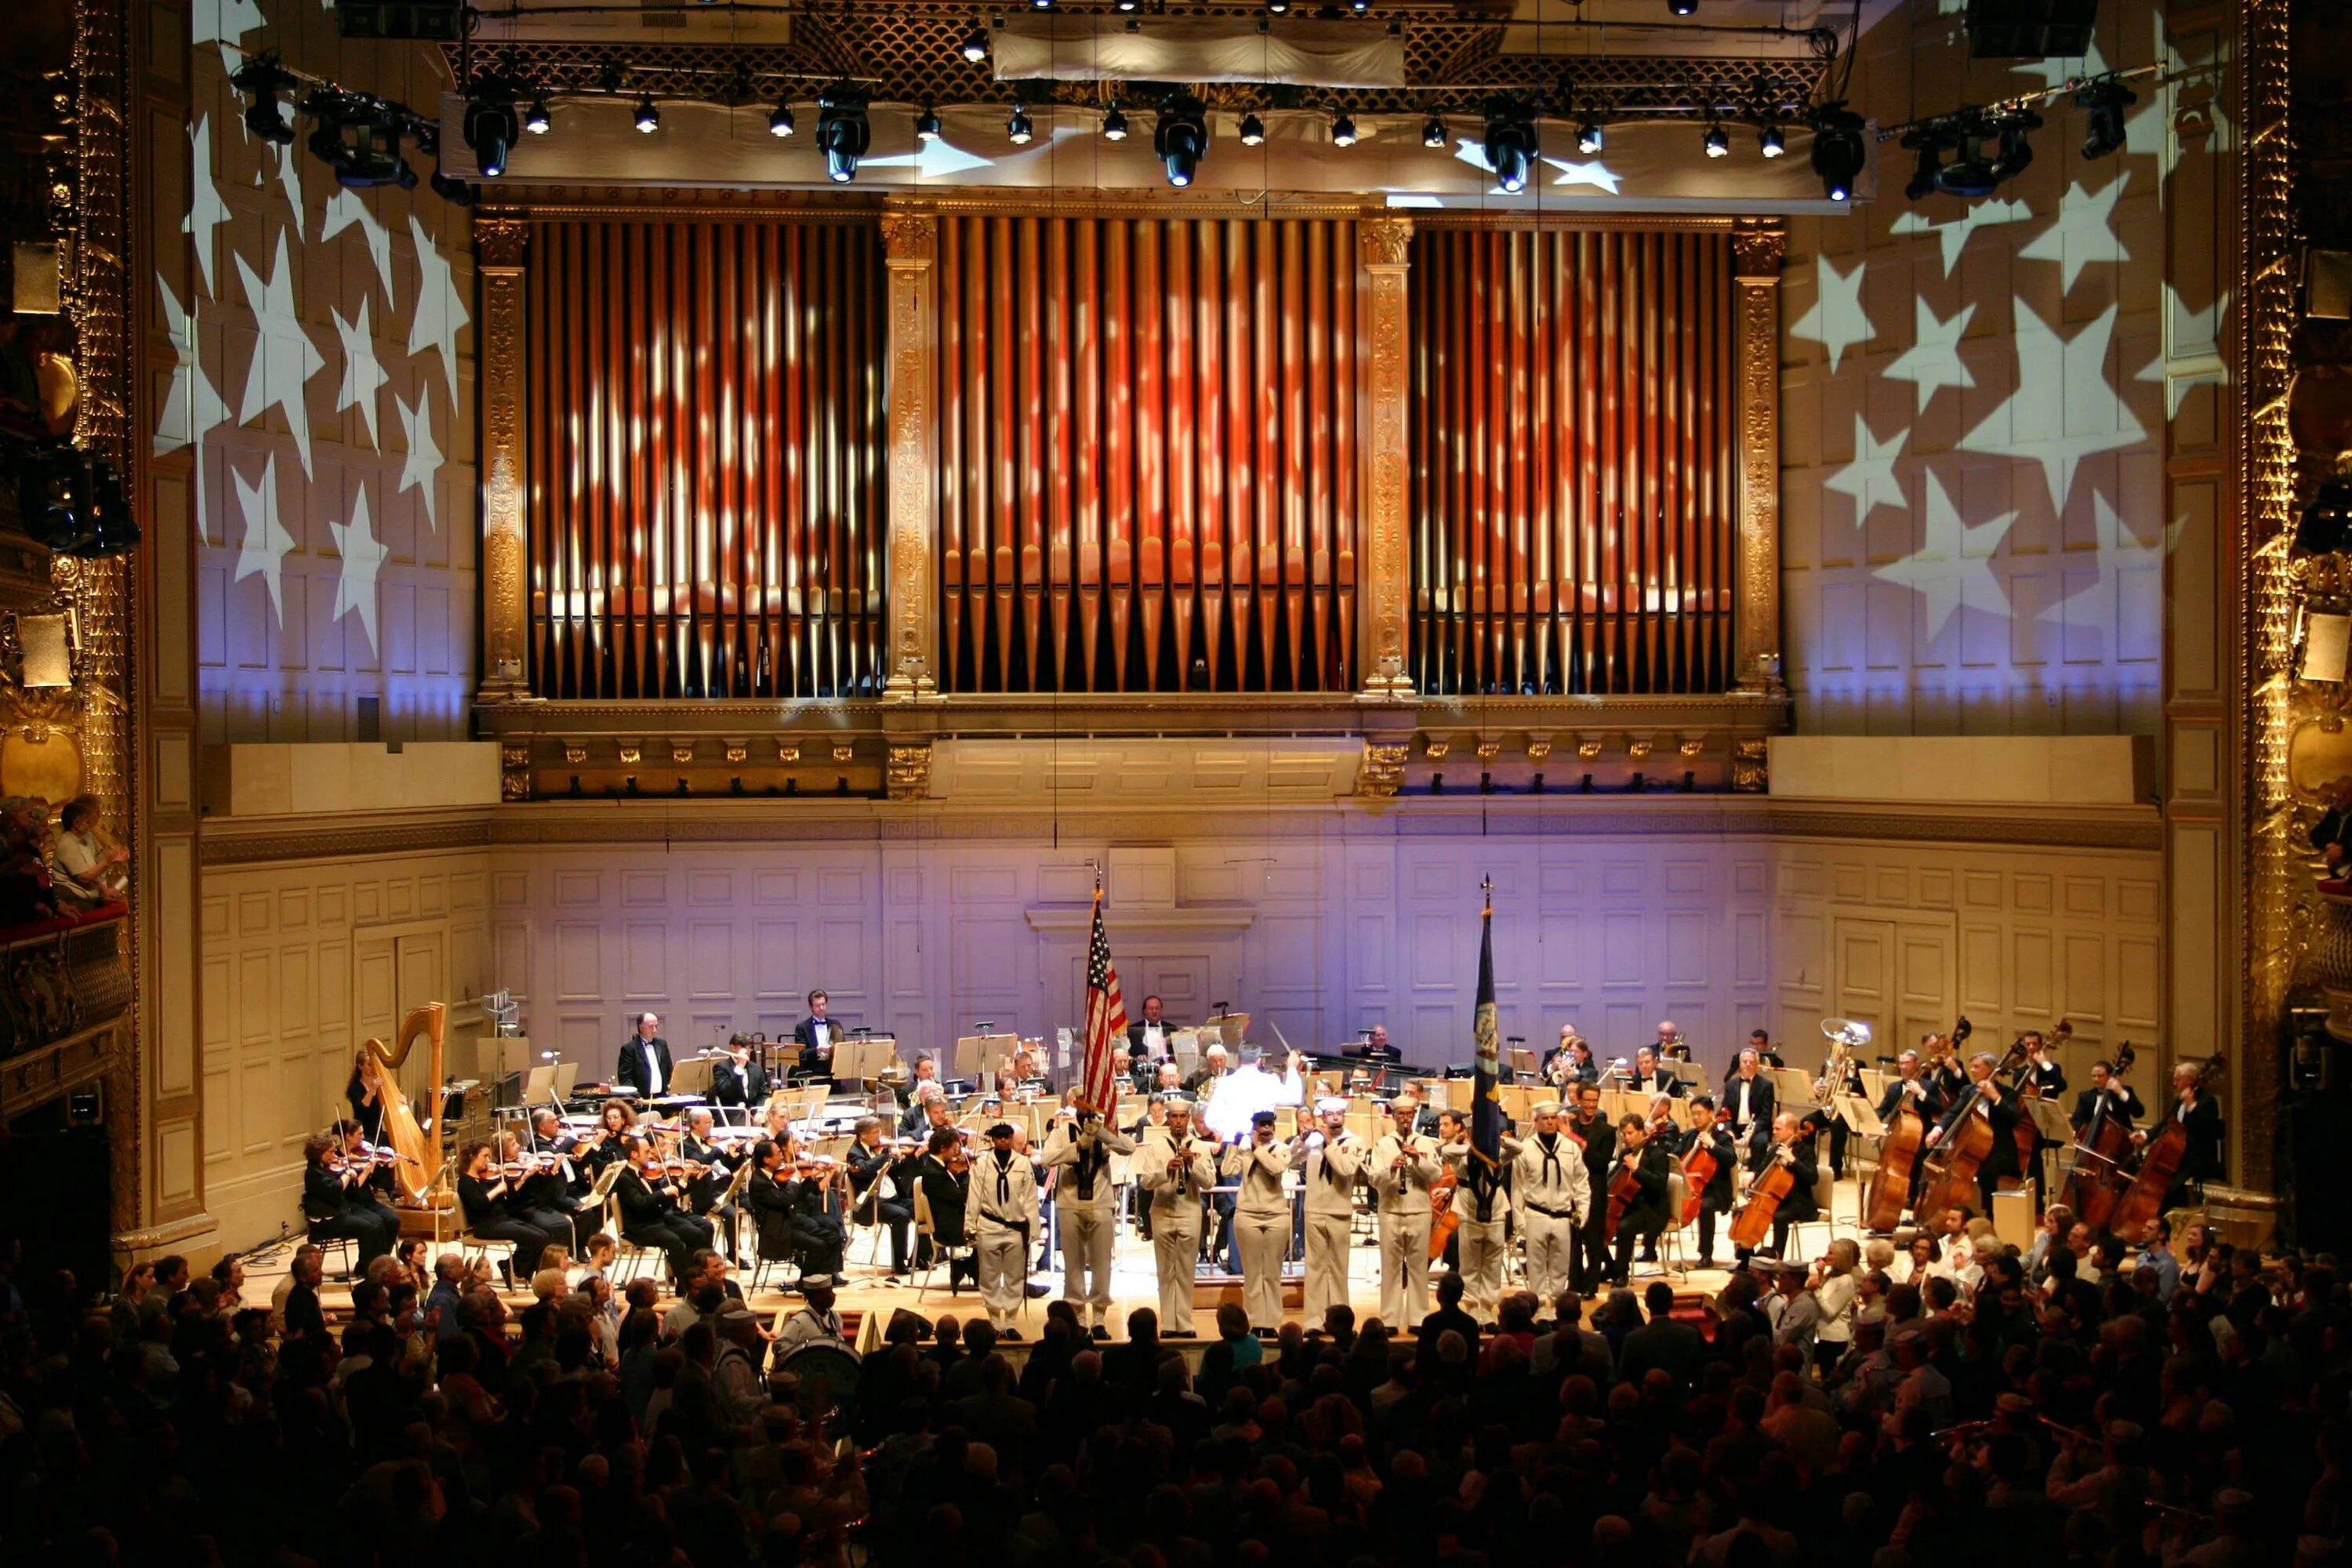 Pops orchestra. Симфонический зал в Бостоне. Бостонский поп-оркестр. Оркестровый зал арт. Симфонический зал Бостона разрез.